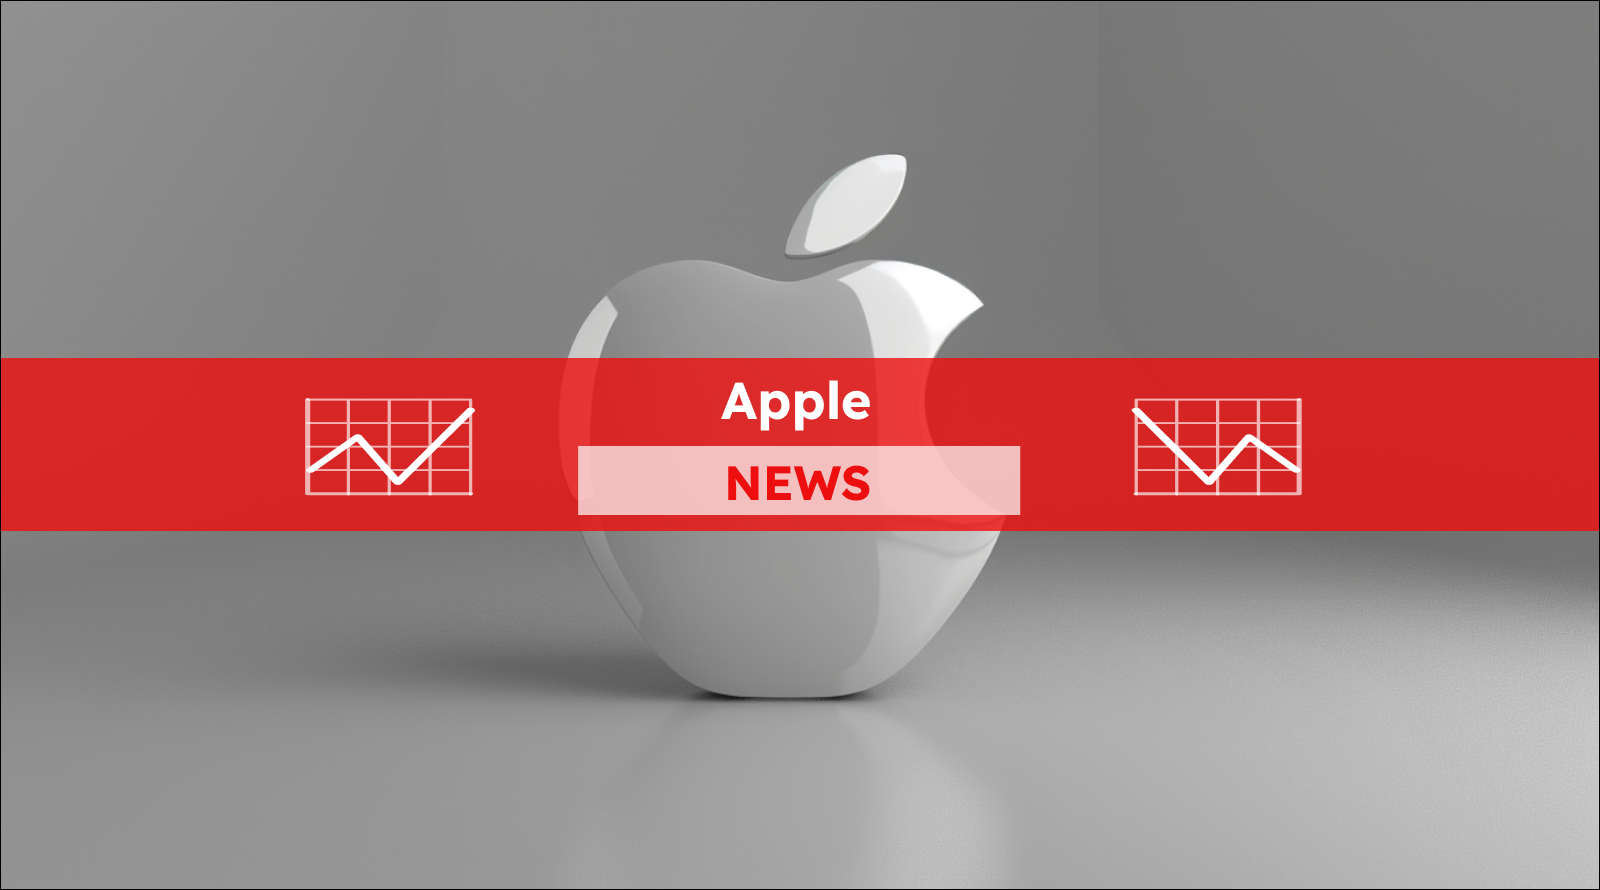 Apple-Logo auf dem grauen Hintergrund, mit einem Apple NEWS Banner.